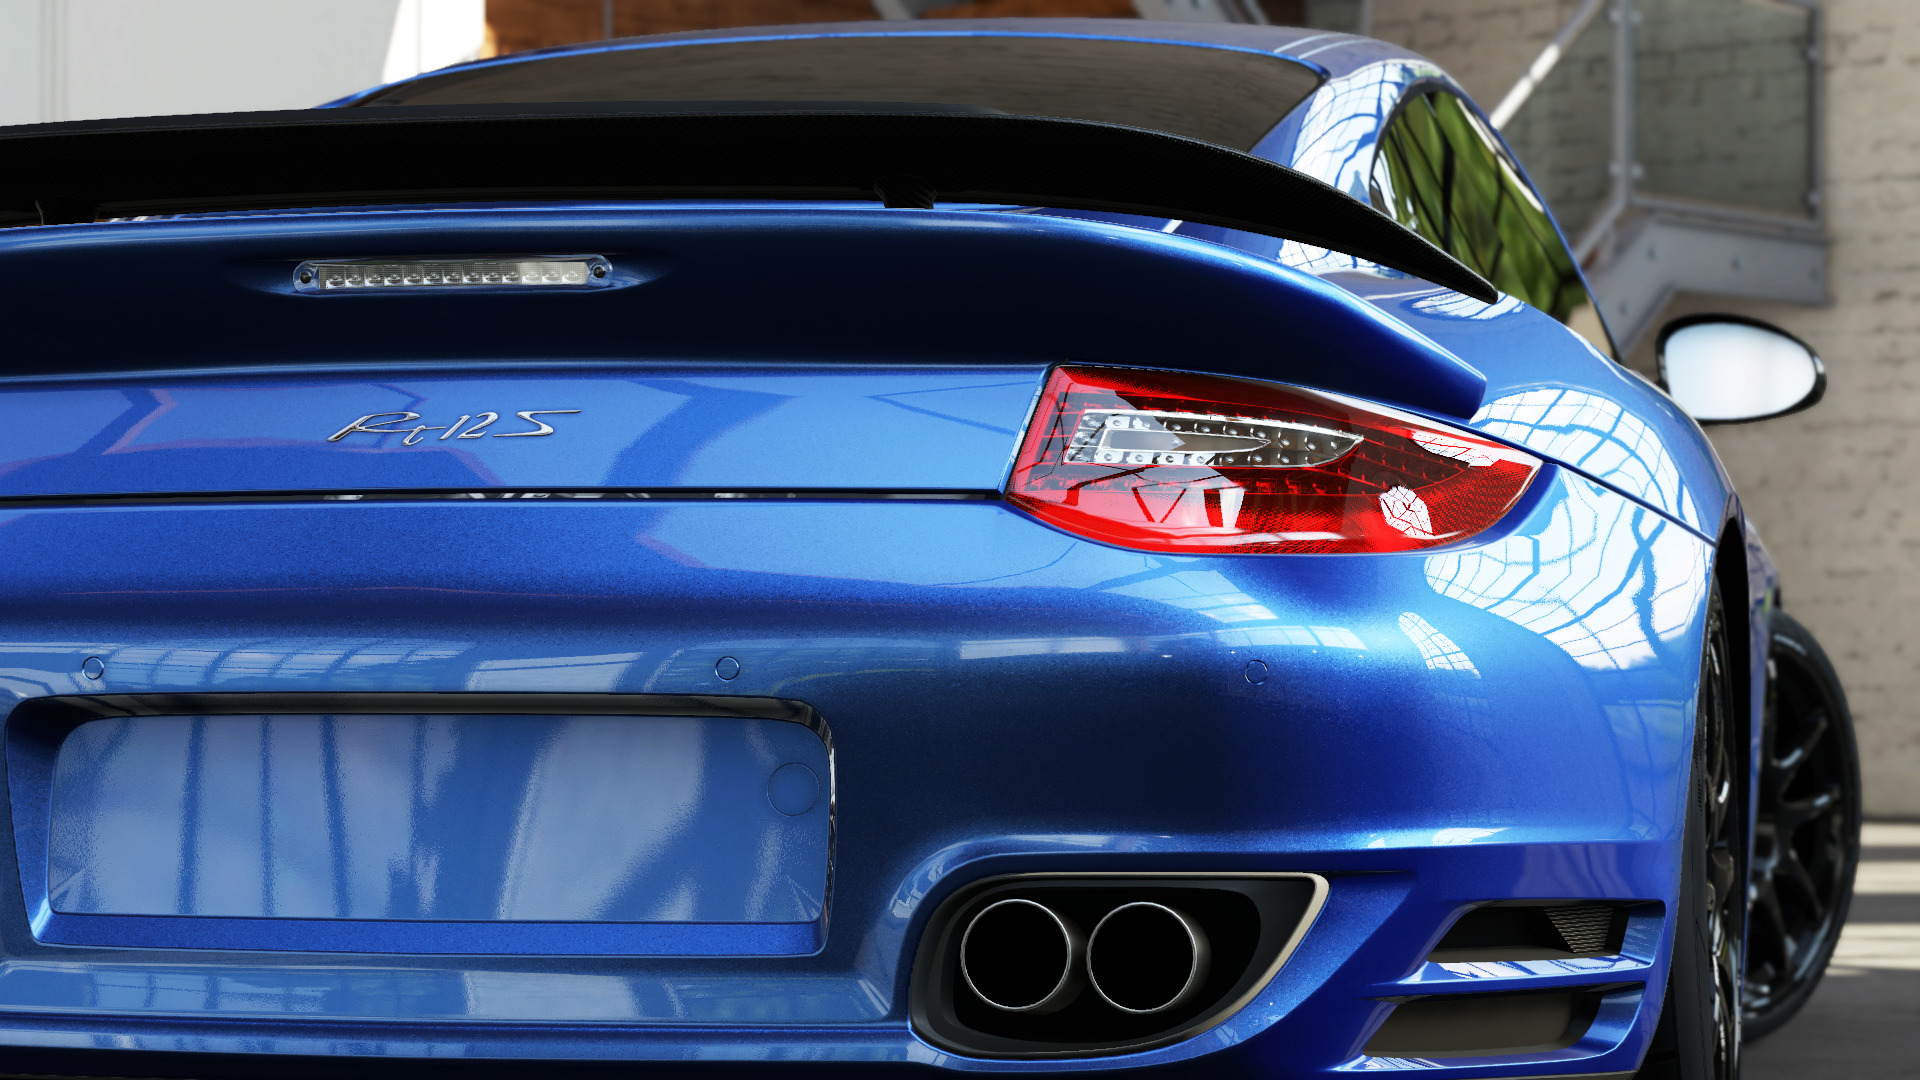 RUF, RUF Rt 12 S, Forza Motorsport 5, Car, Porsche, Blue Cars Wallpaper